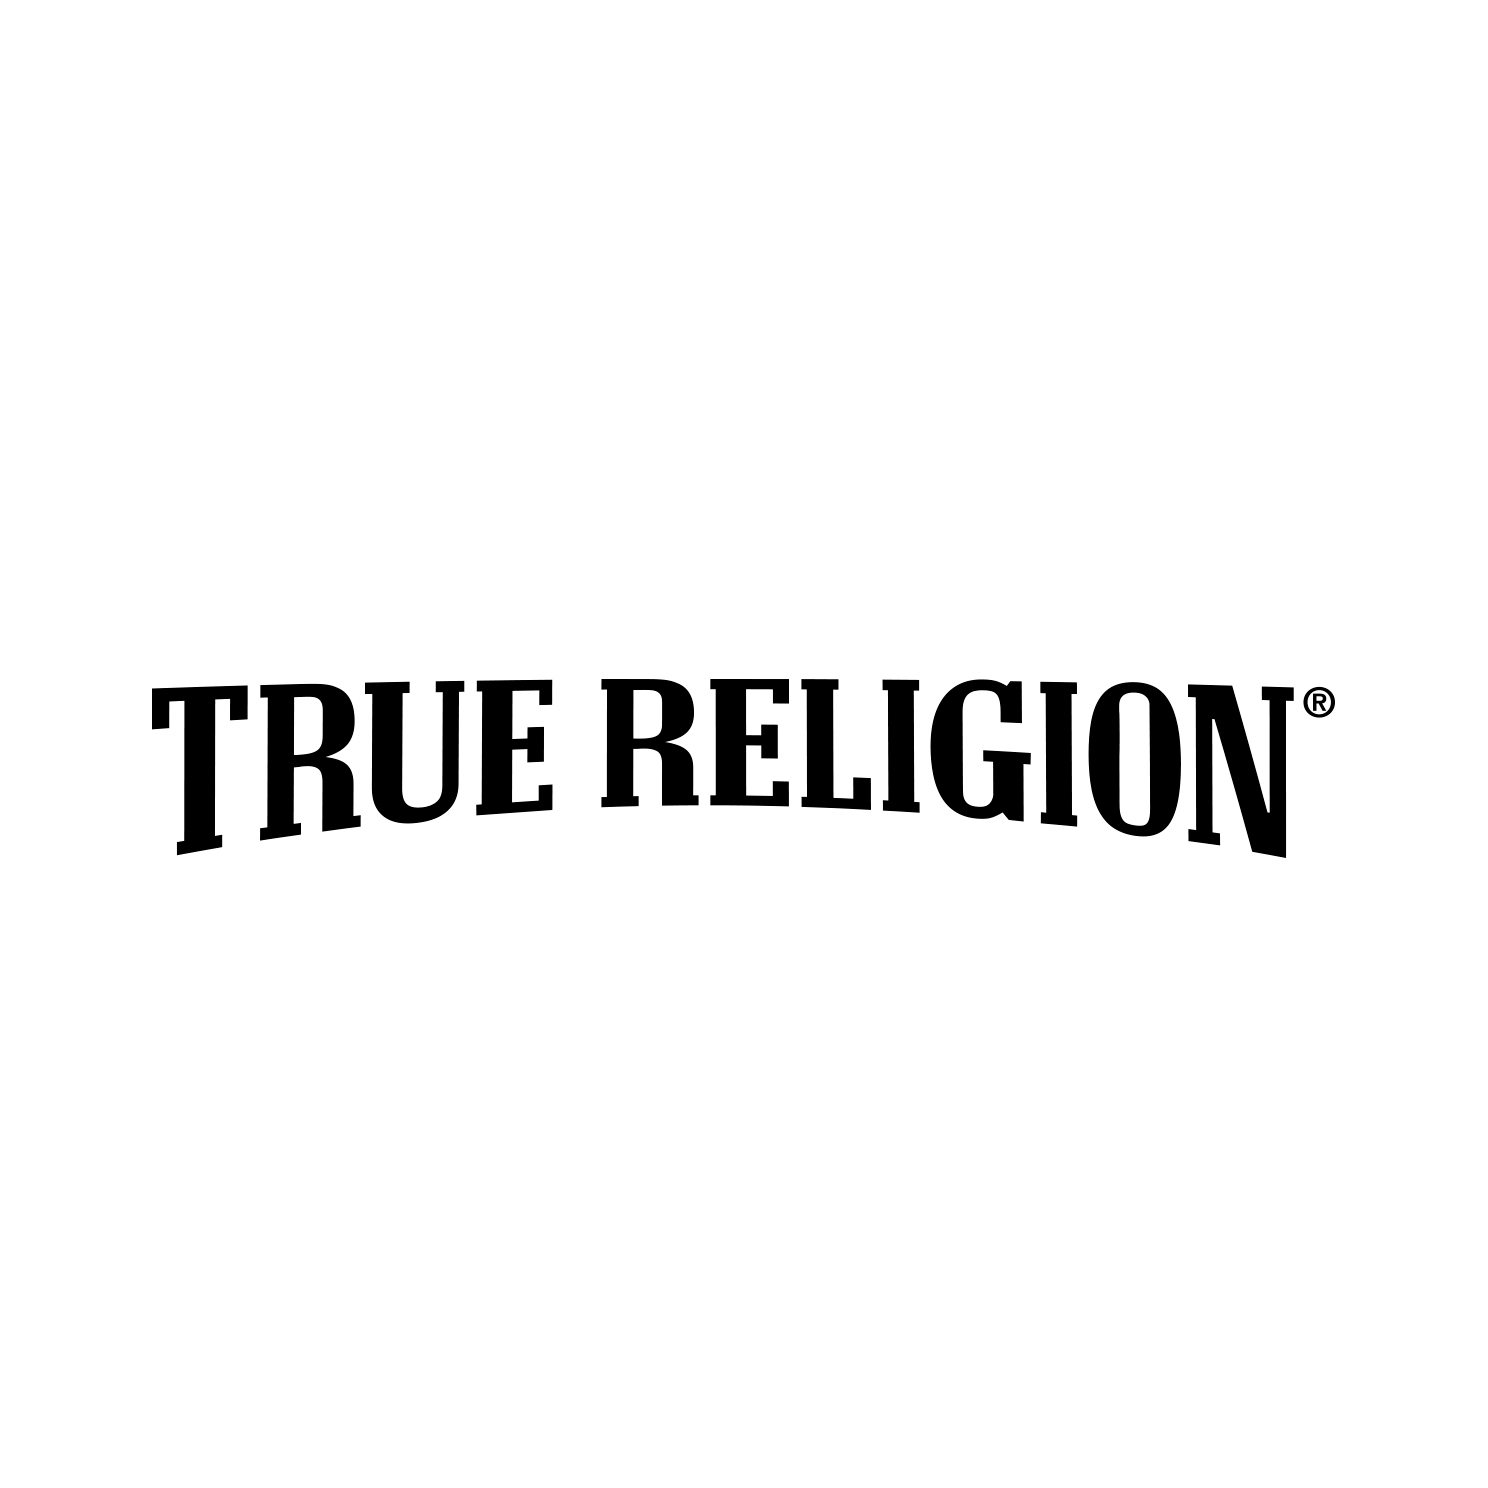 True_Religion_logo_text_w&b